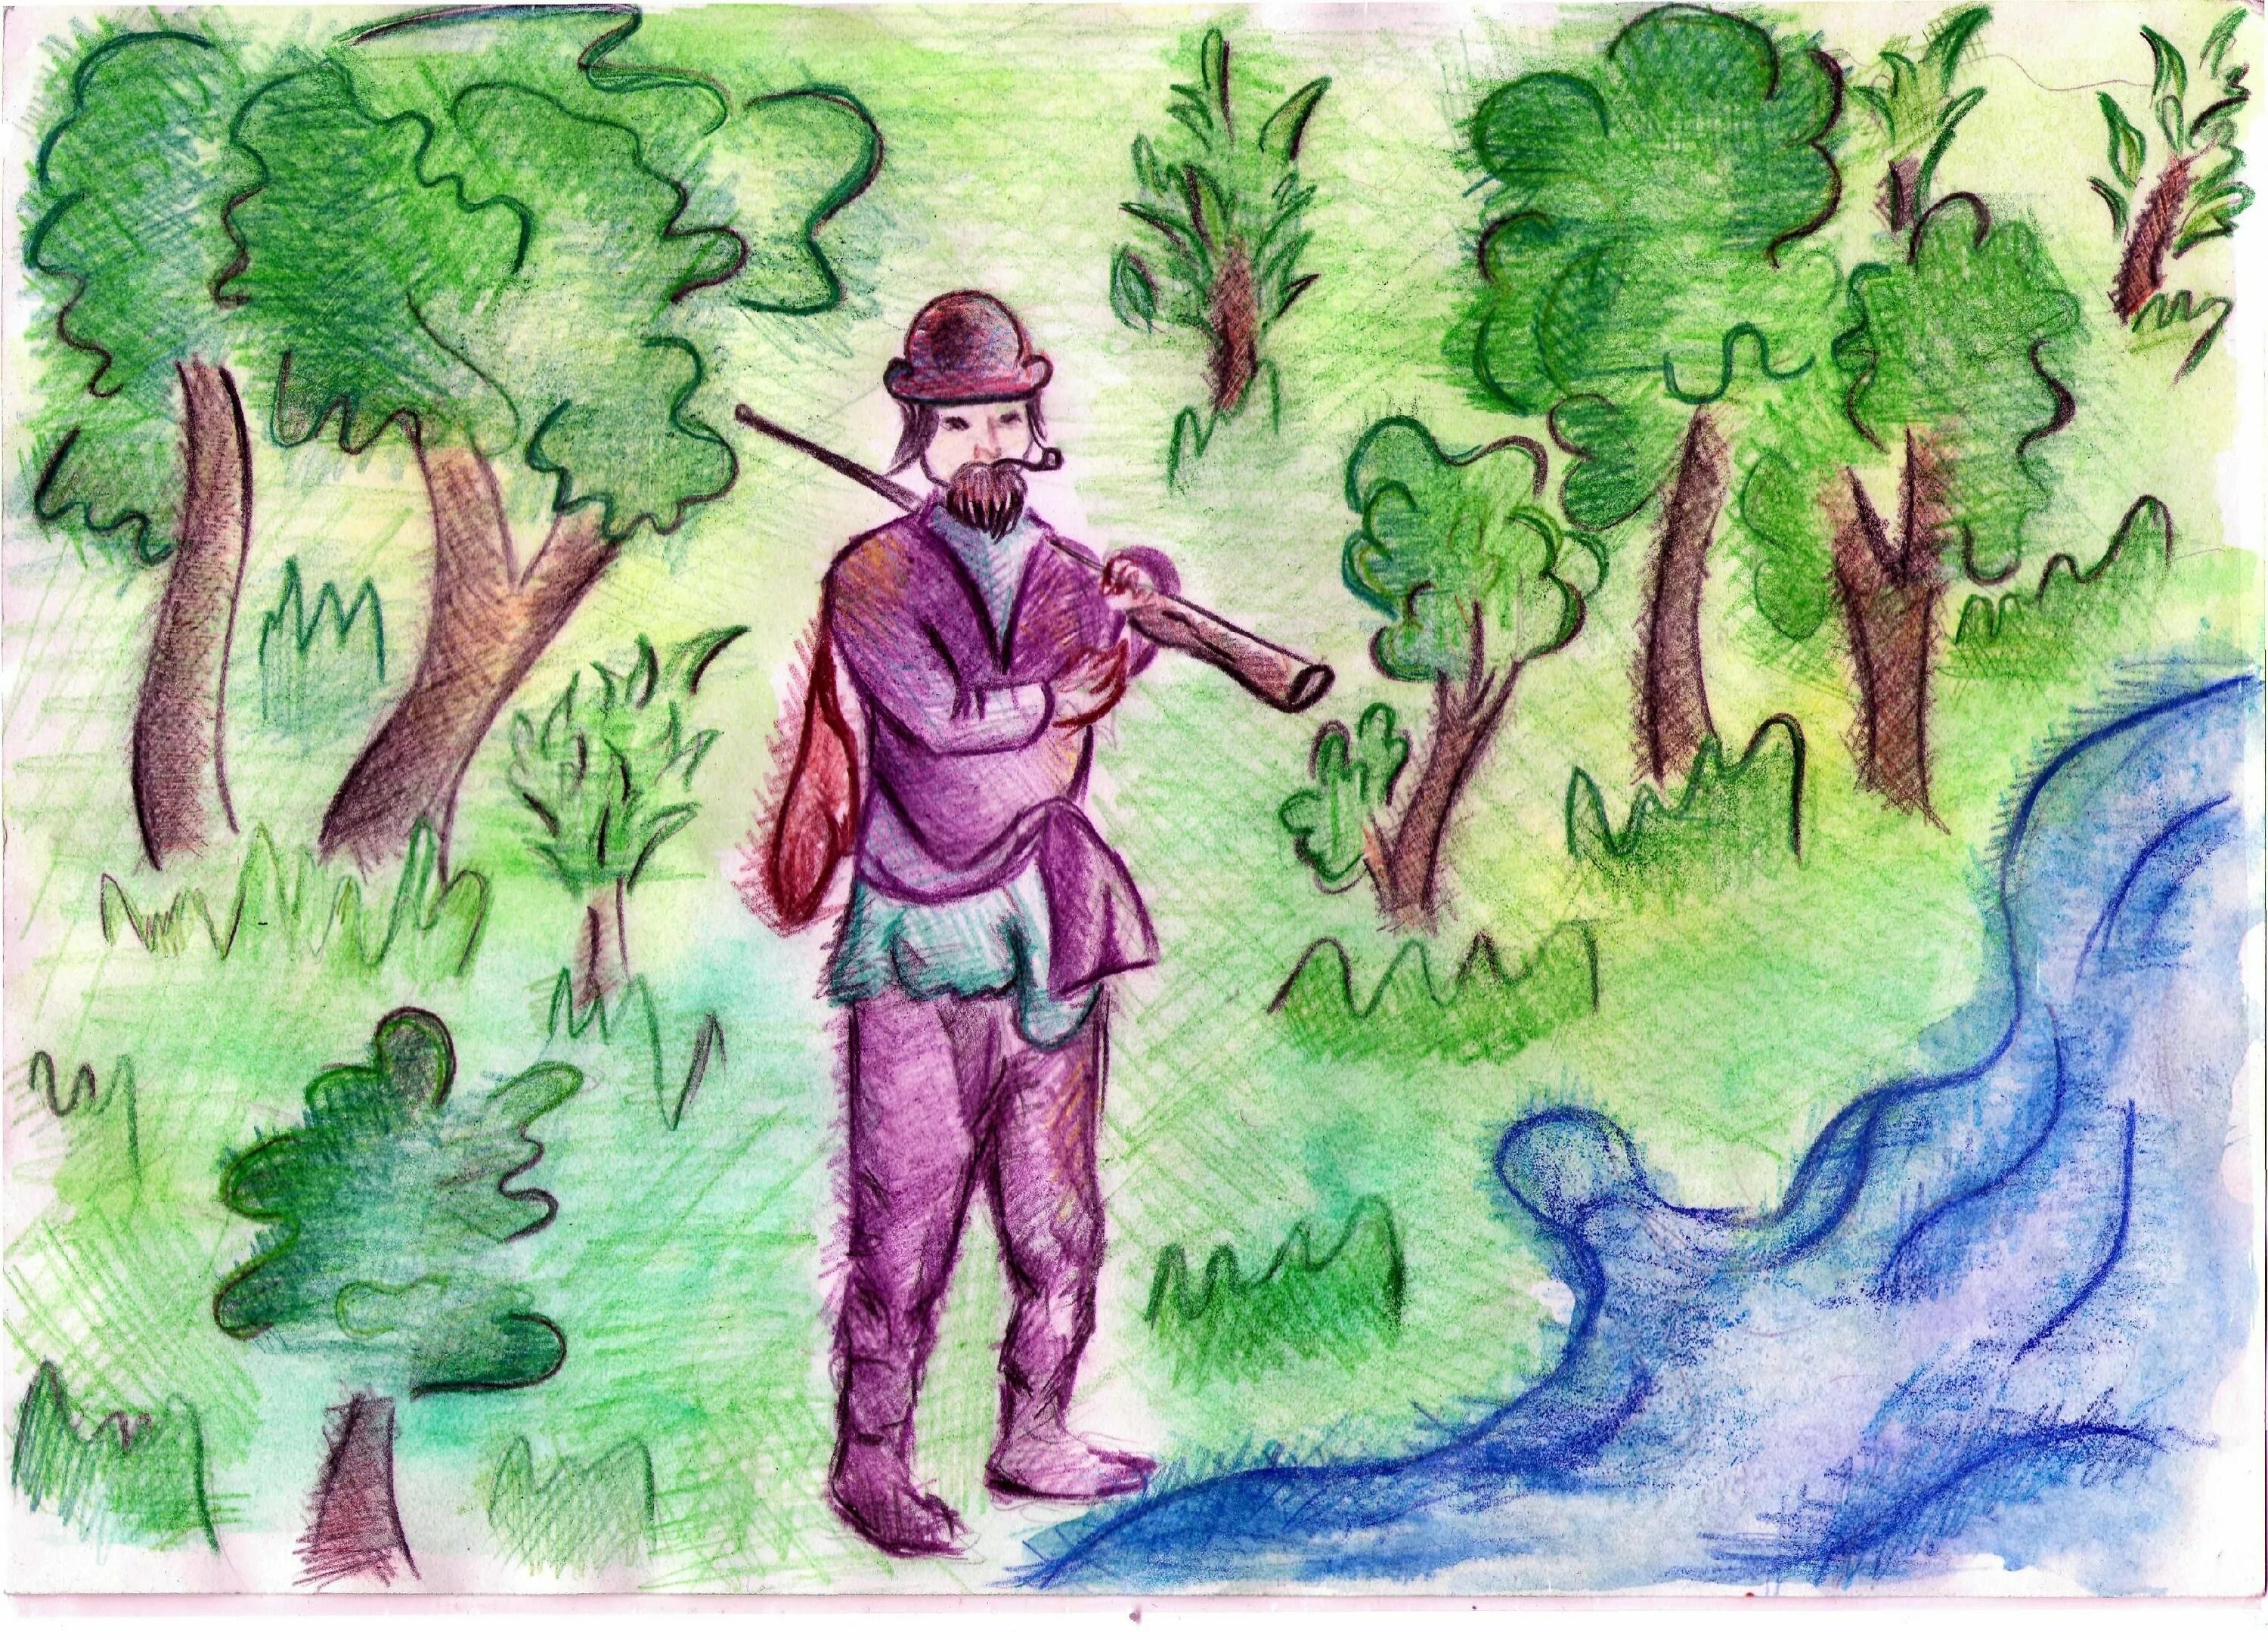 Иллюстрация к рассказу Маттео Фальконе. Иллюстрация к рассказу Васюткино озеро. Маттео Фальконе рисунки к произведению. Иллюстрация Васюткино озеро 5 класс. Васюткино озеро 6 класс